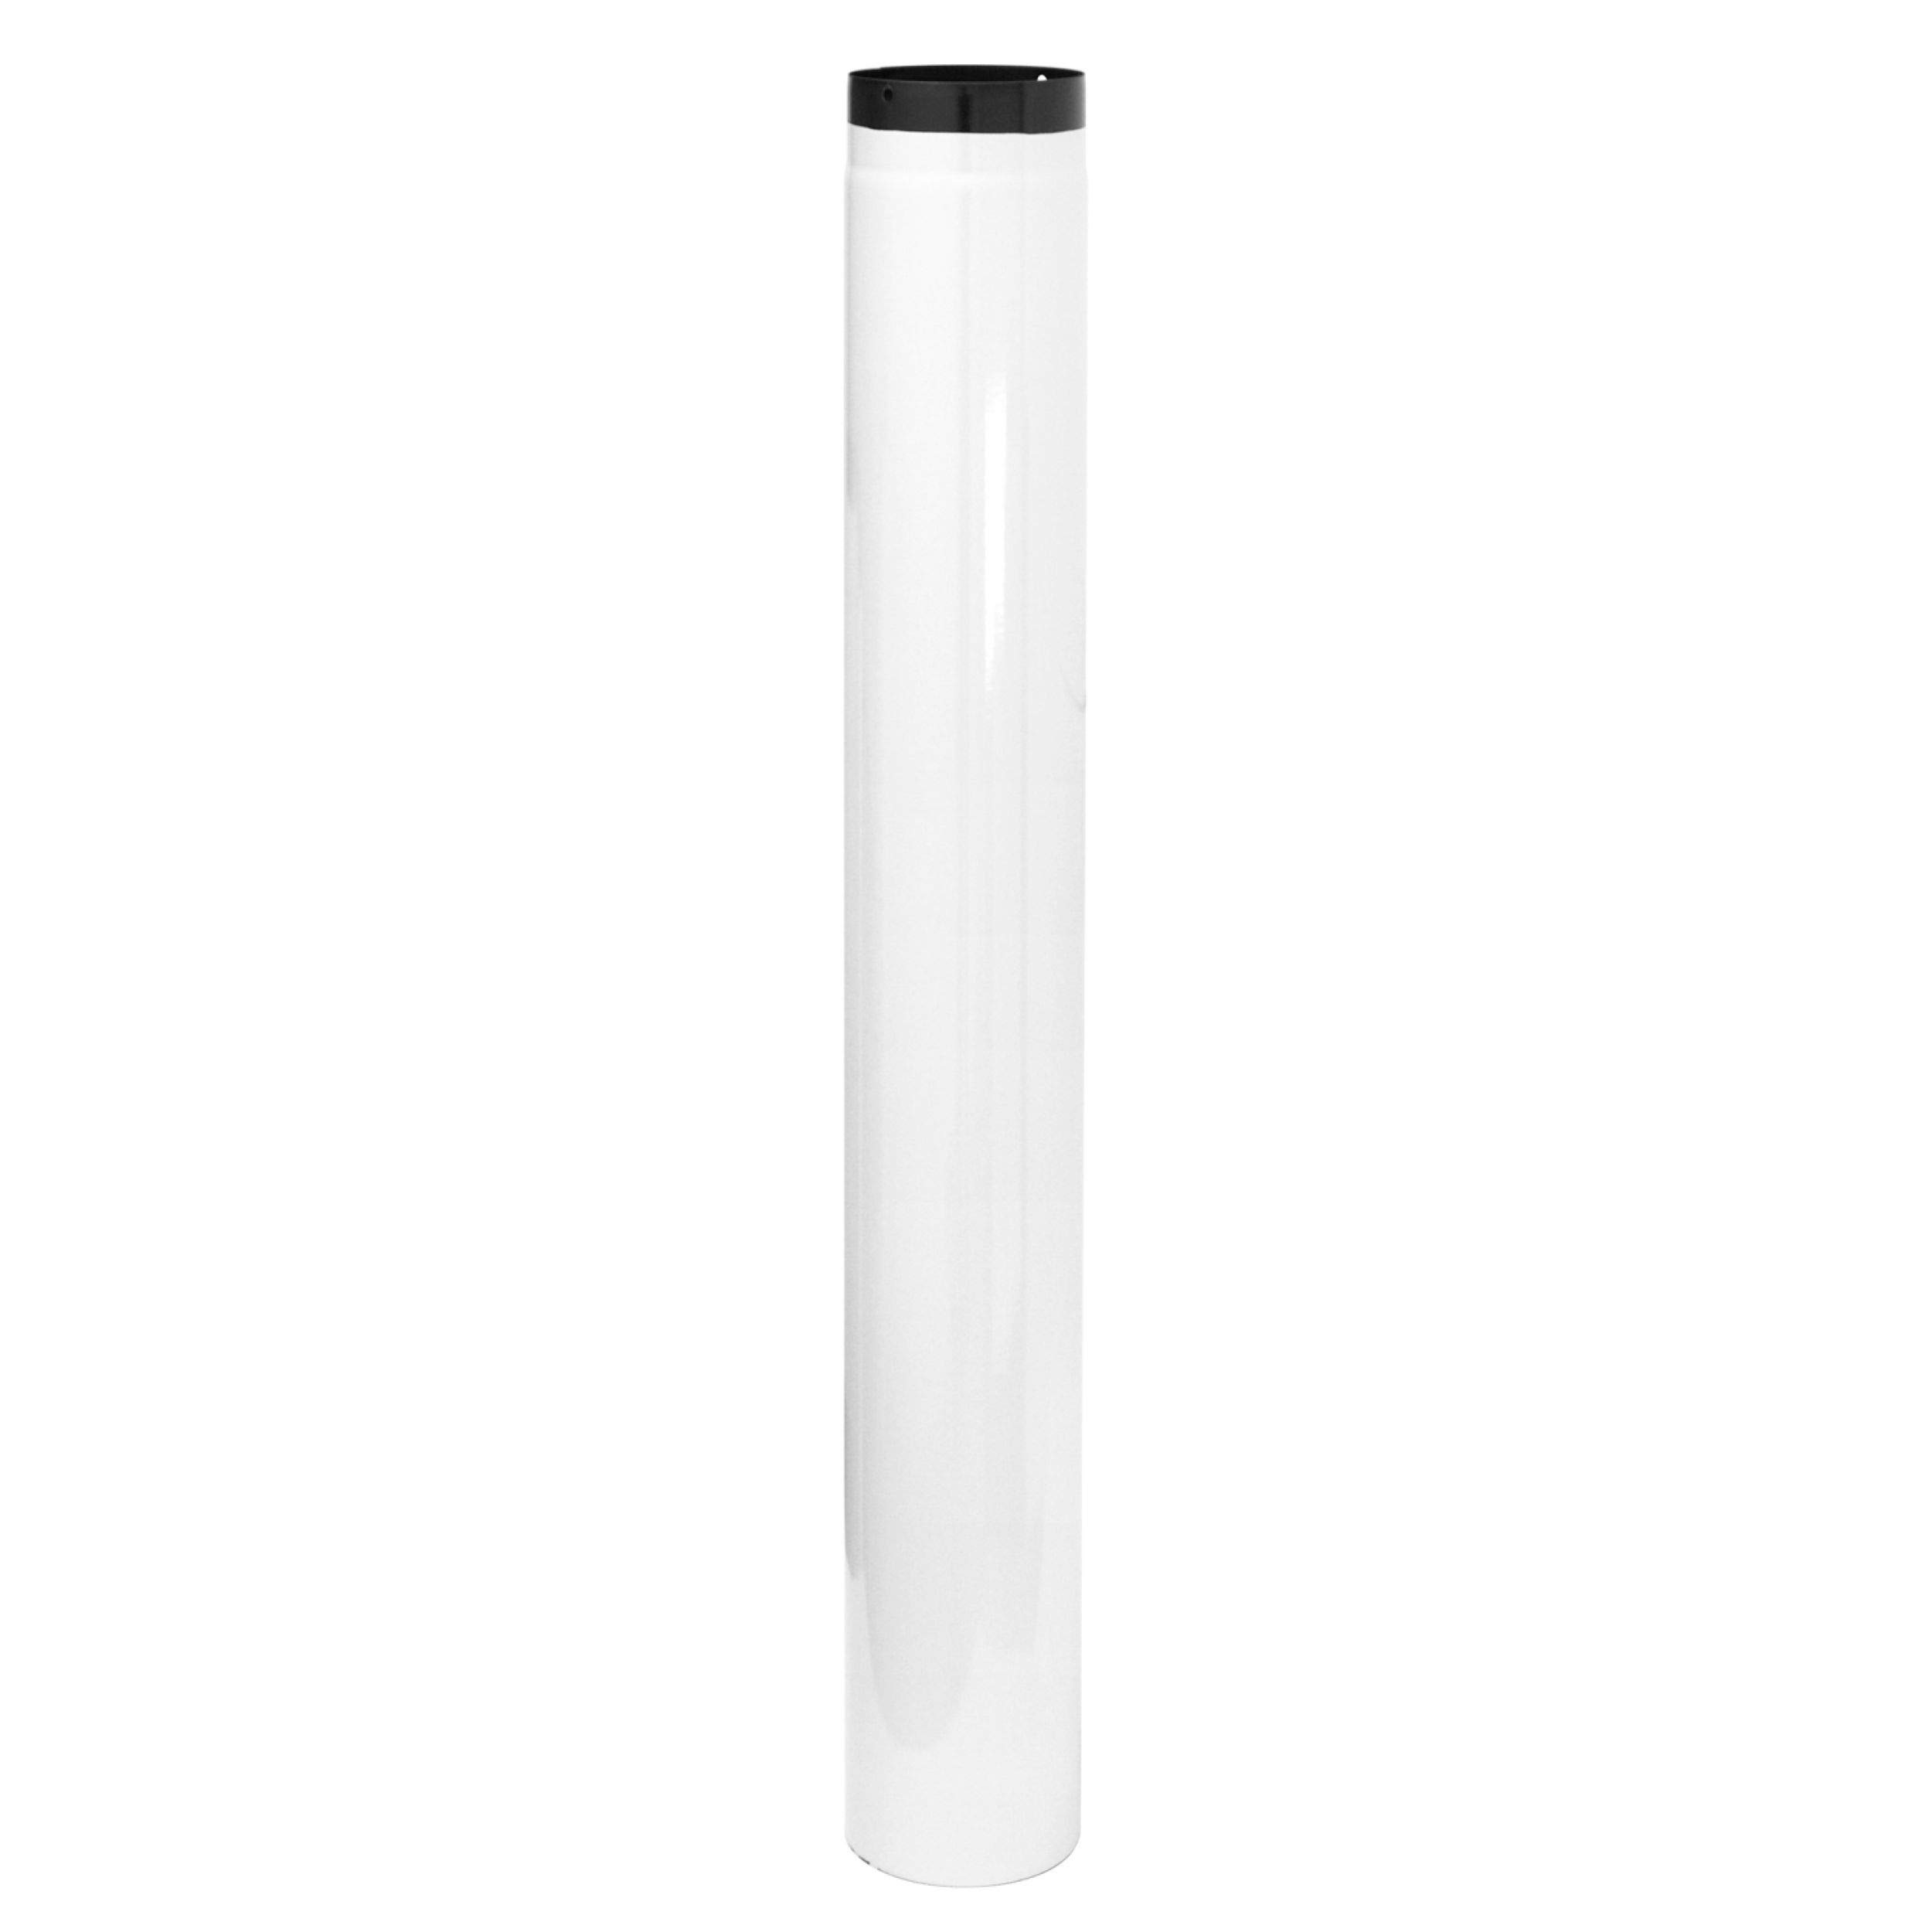 raik Rauchrohr/Ofenrohr Durchmesser 130 mm Länge 1000 mm Emaille Weiß ESH002-130-w